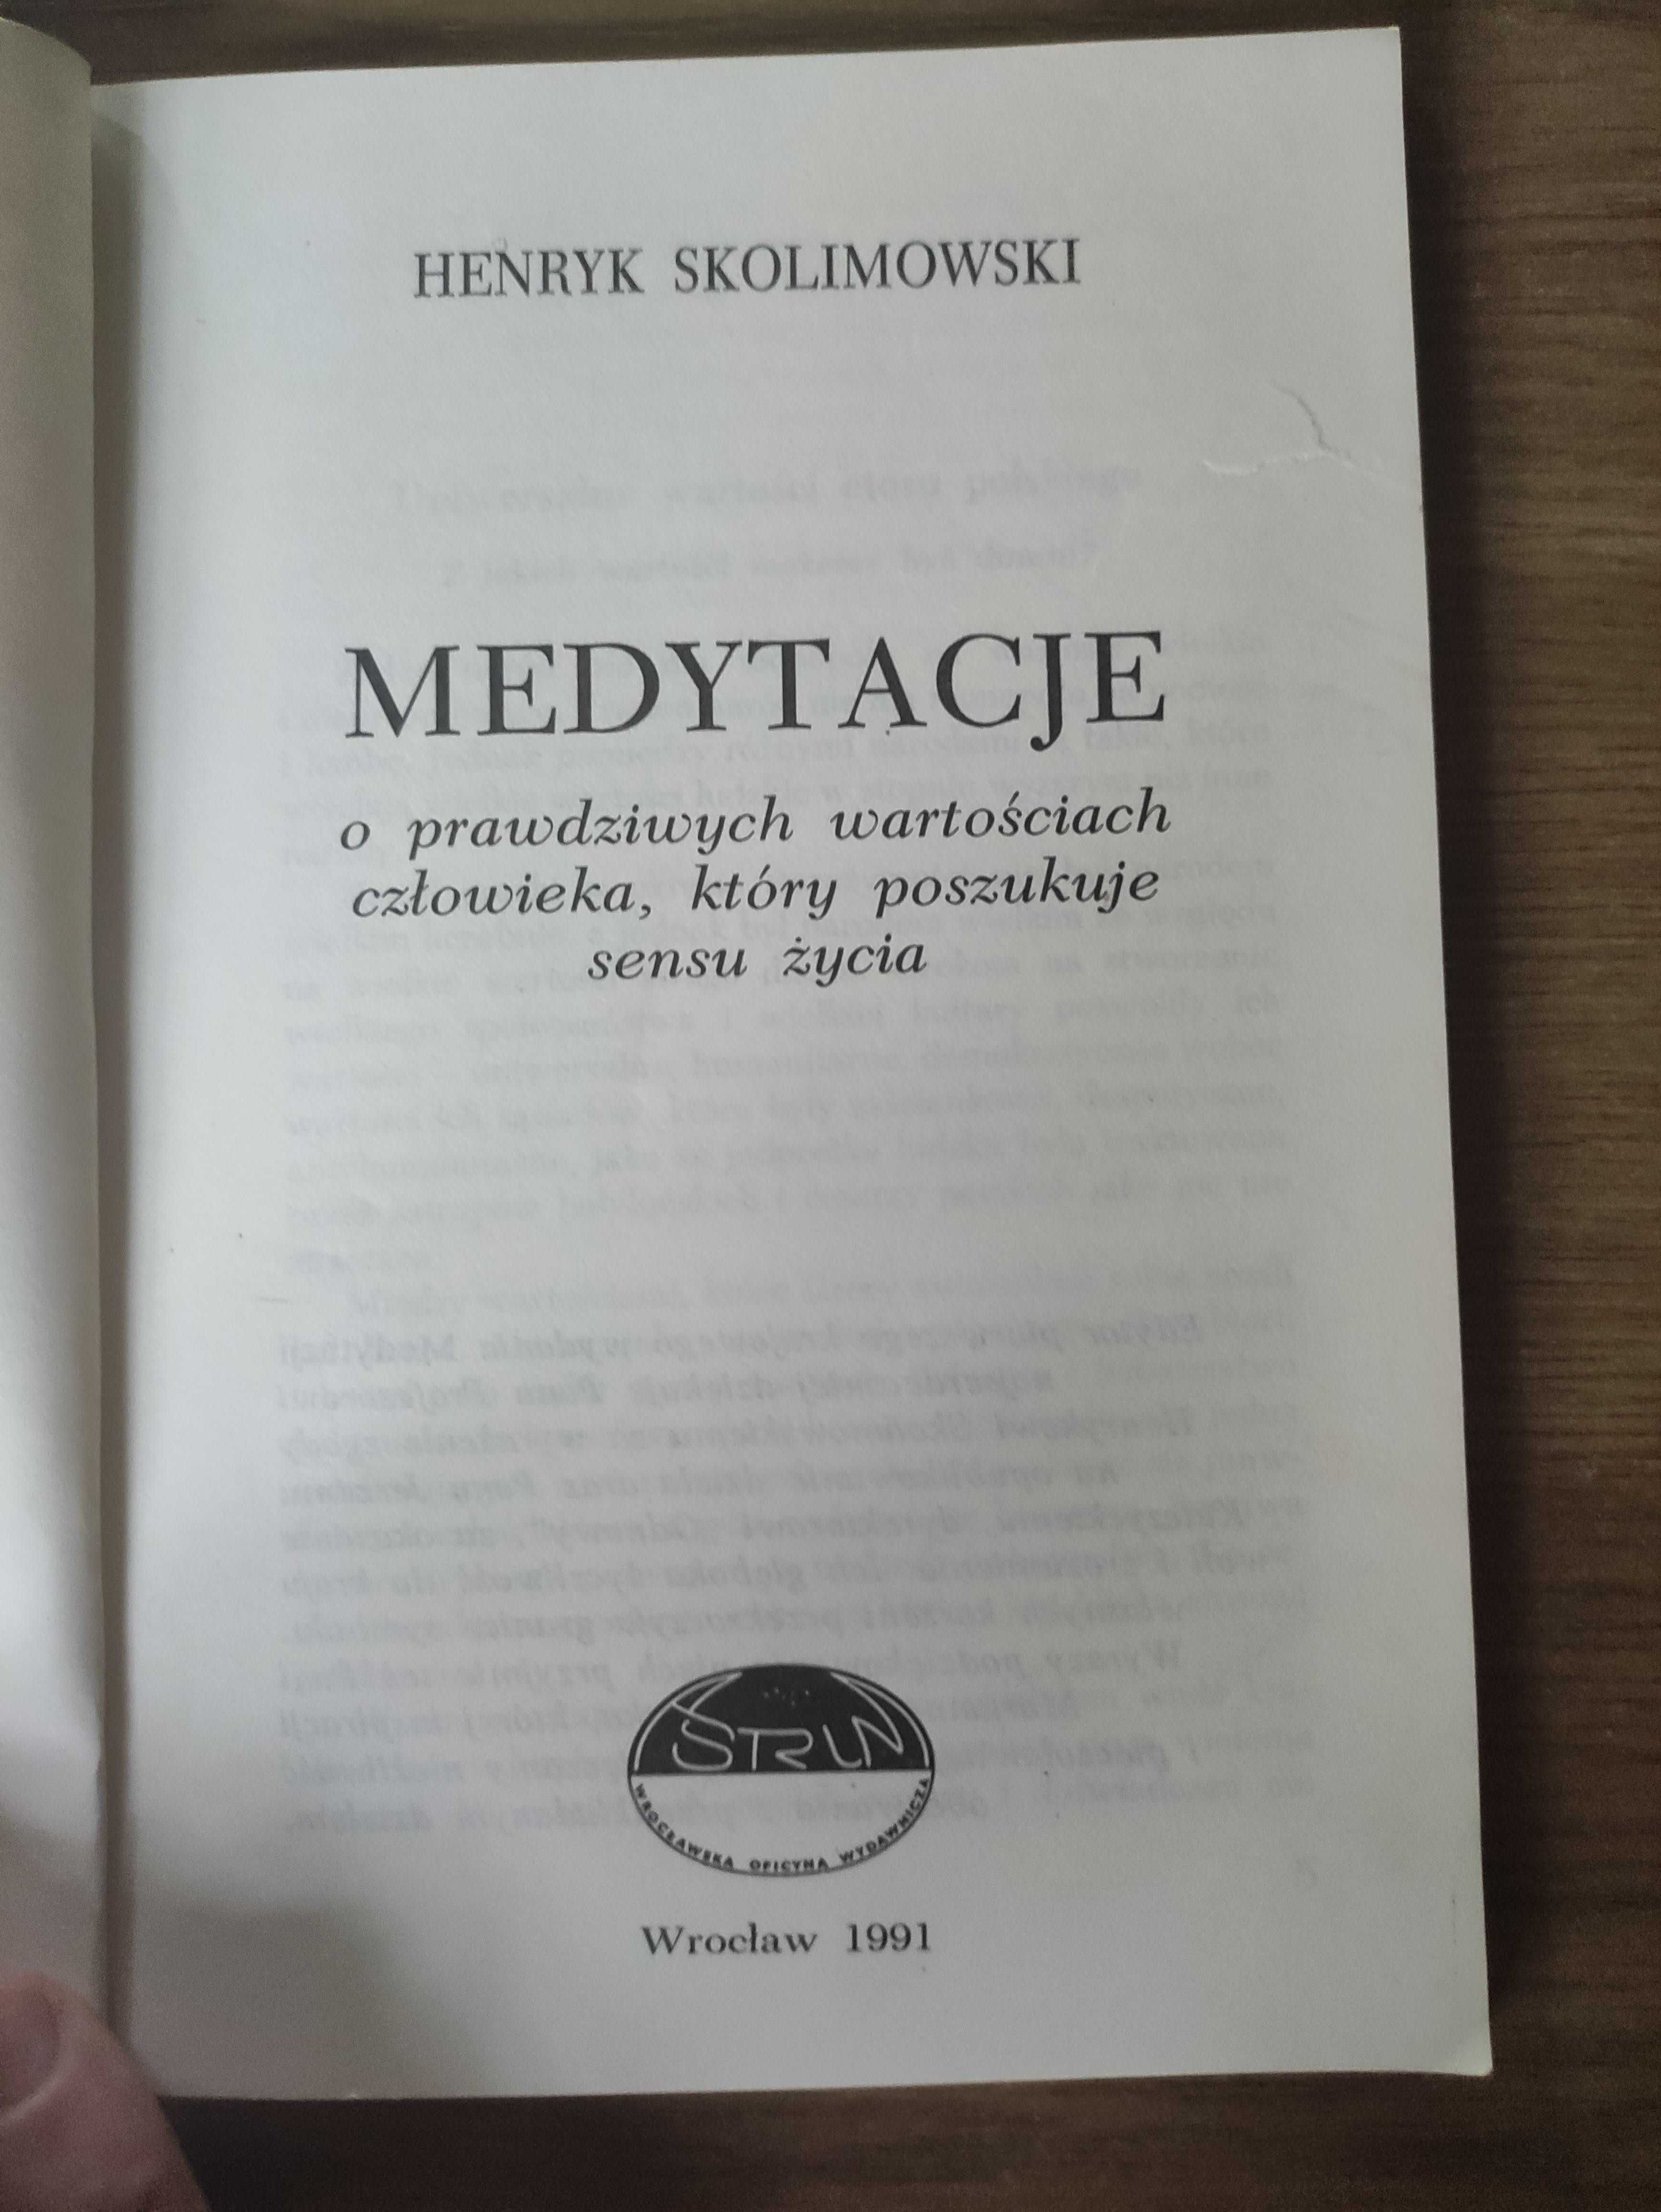 Medytacje - Henryk Skolimowski